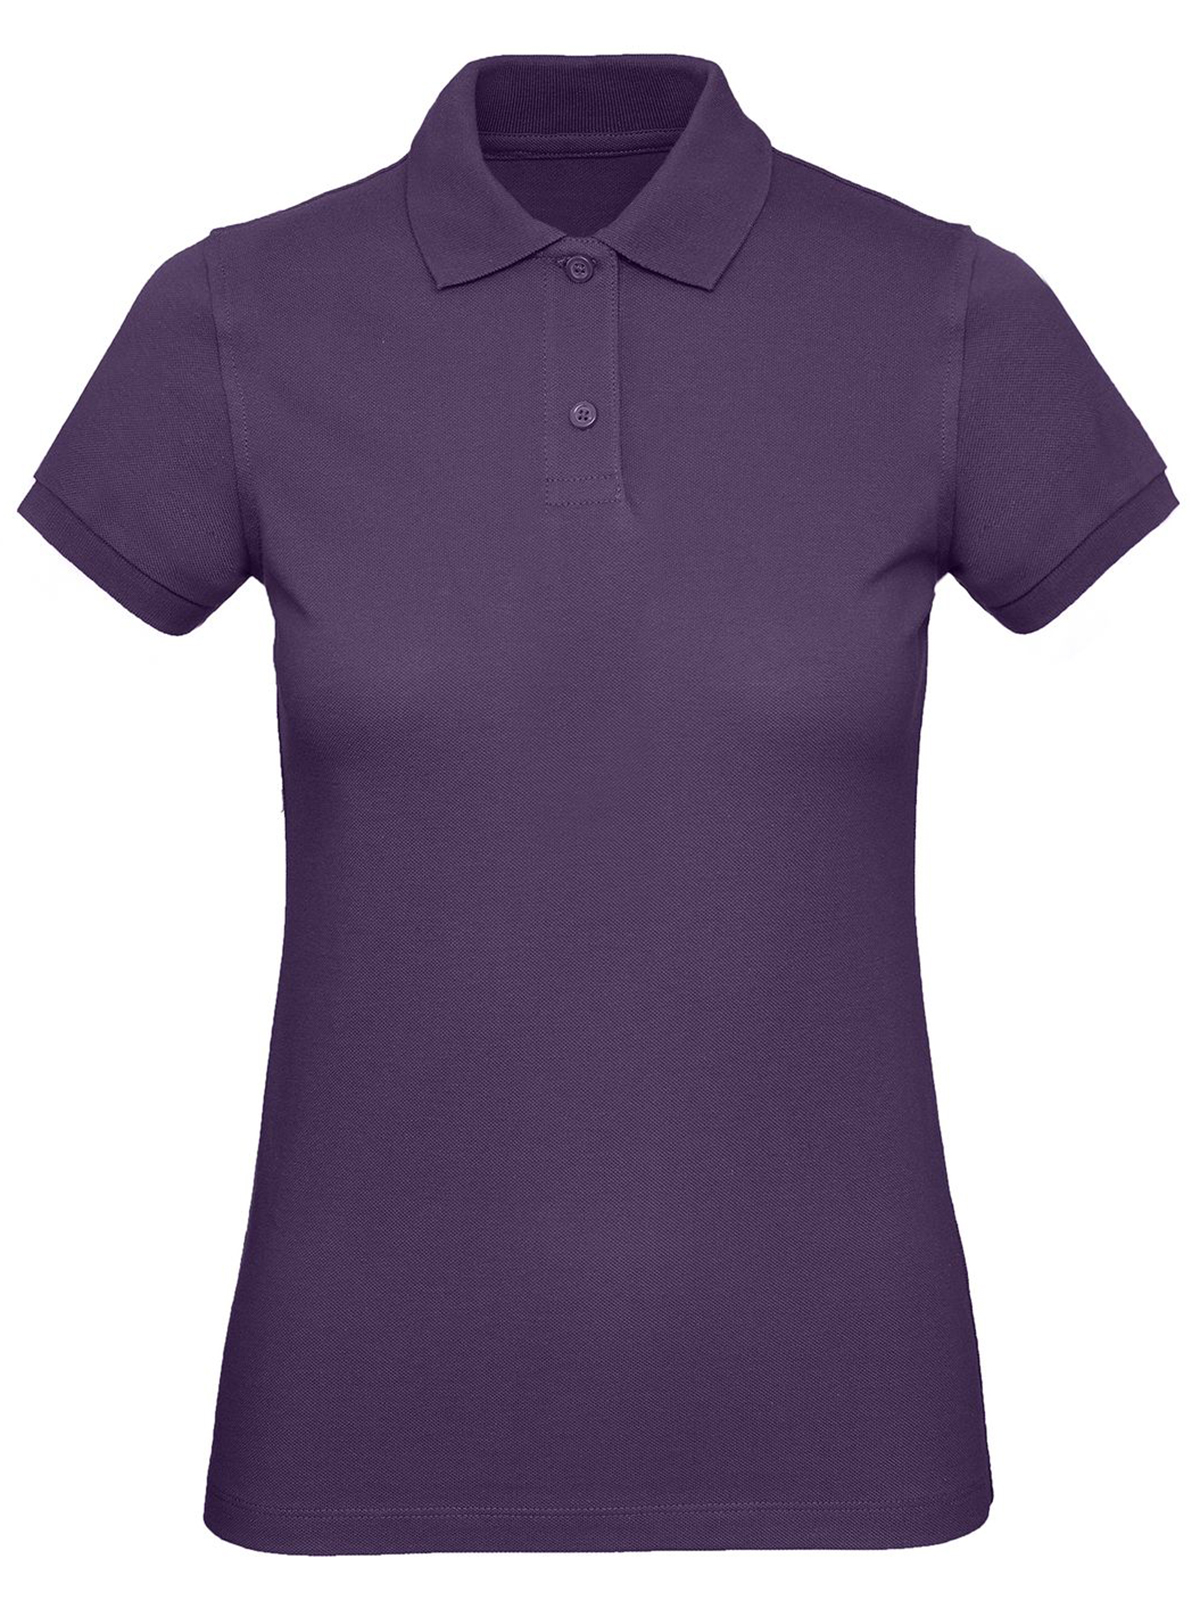 inspire-polo-women-radiant-purple.webp